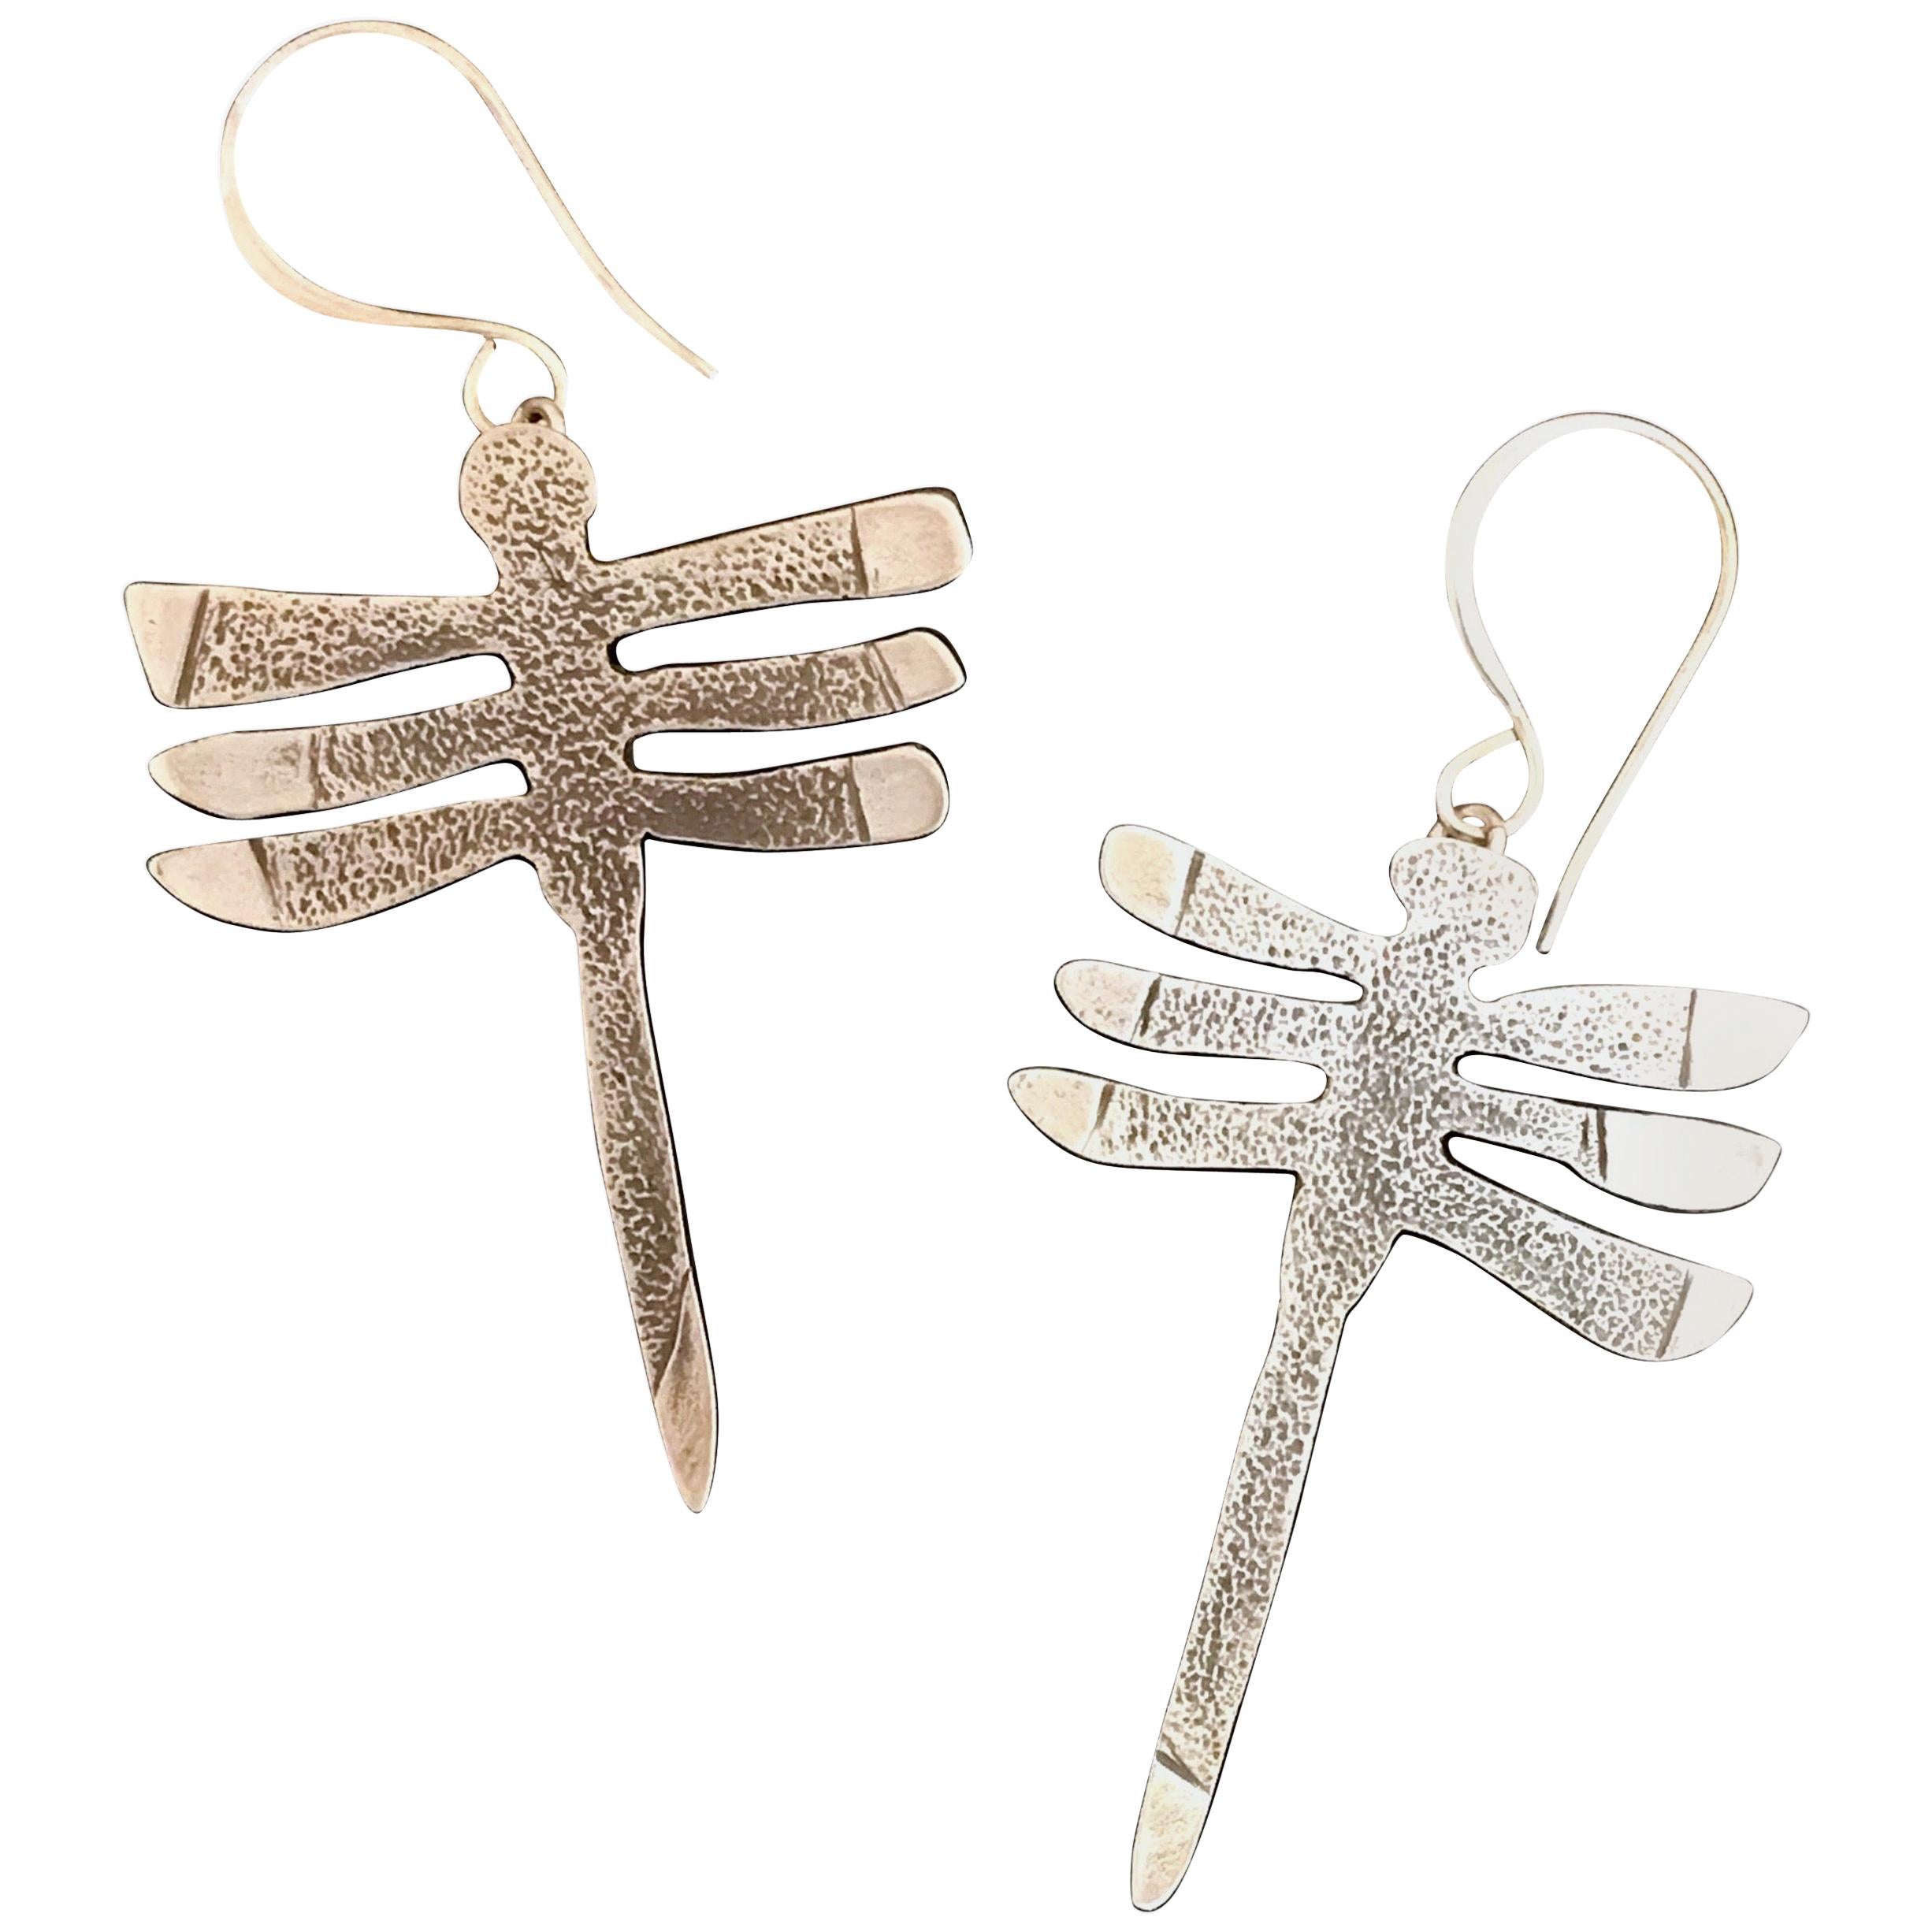 My Protectors, Melanie Yazzie three winged dragonfly earrings silver Navajo 